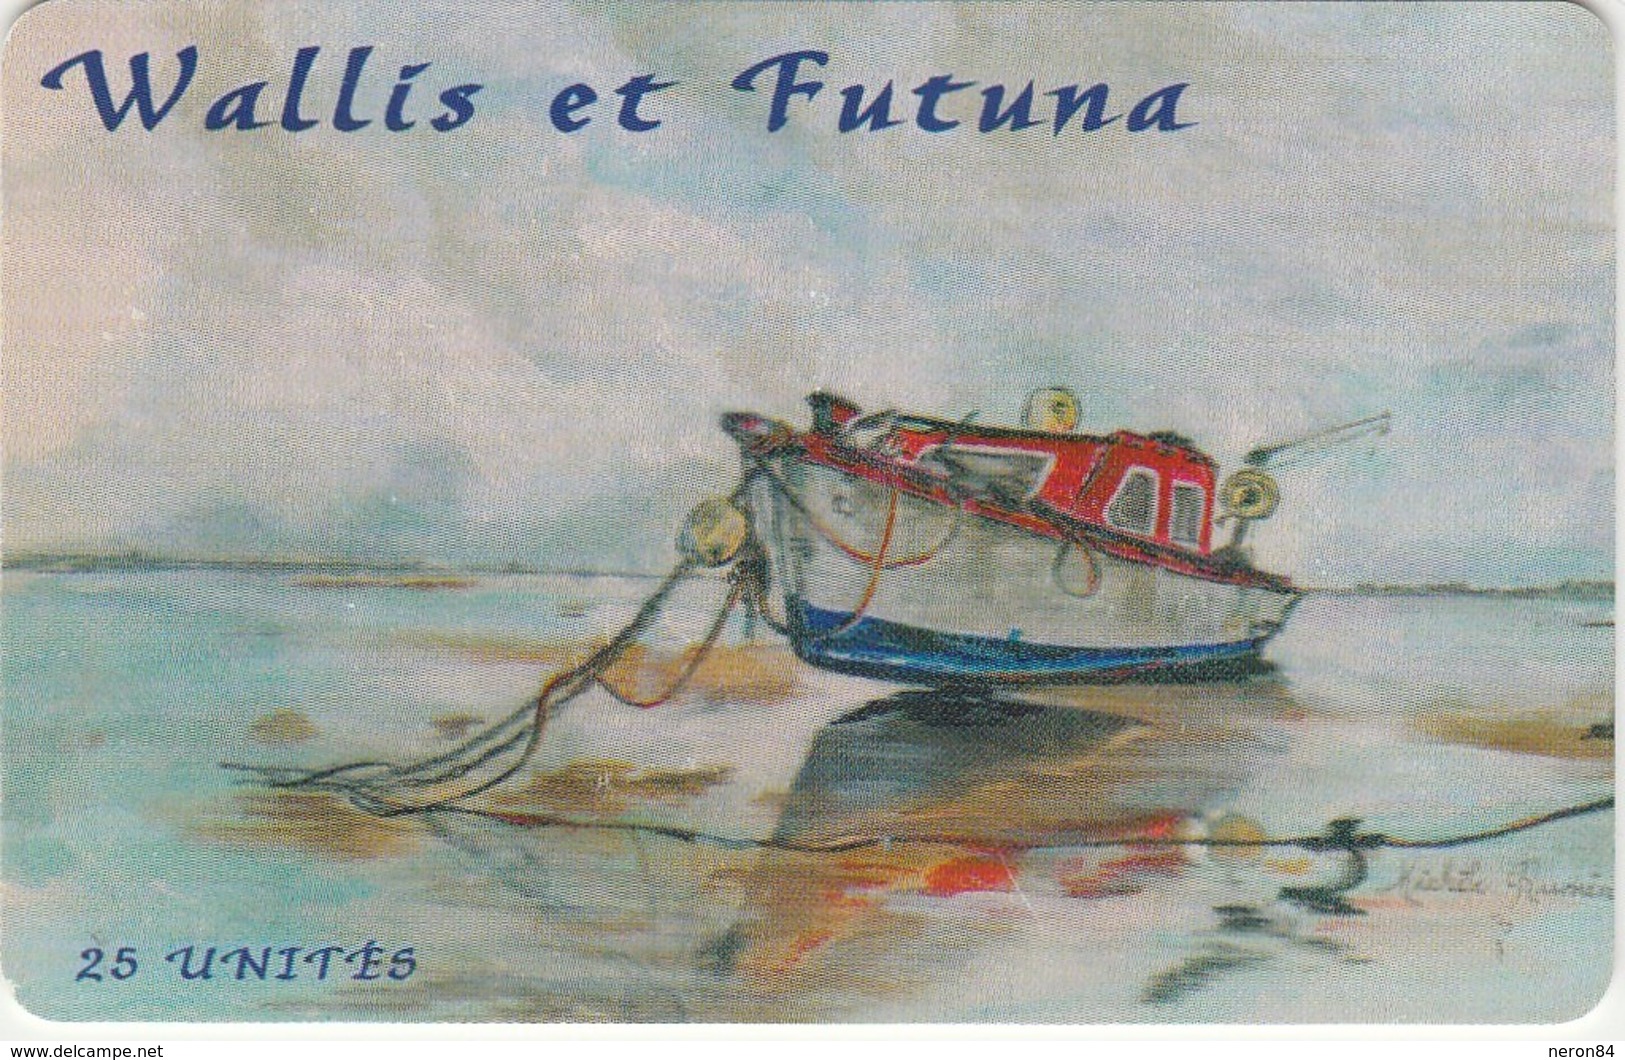 TELECARTE DE WALLIS ET FUTUNA 25 UNITES DU 10/2000. - Wallis-et-Futuna